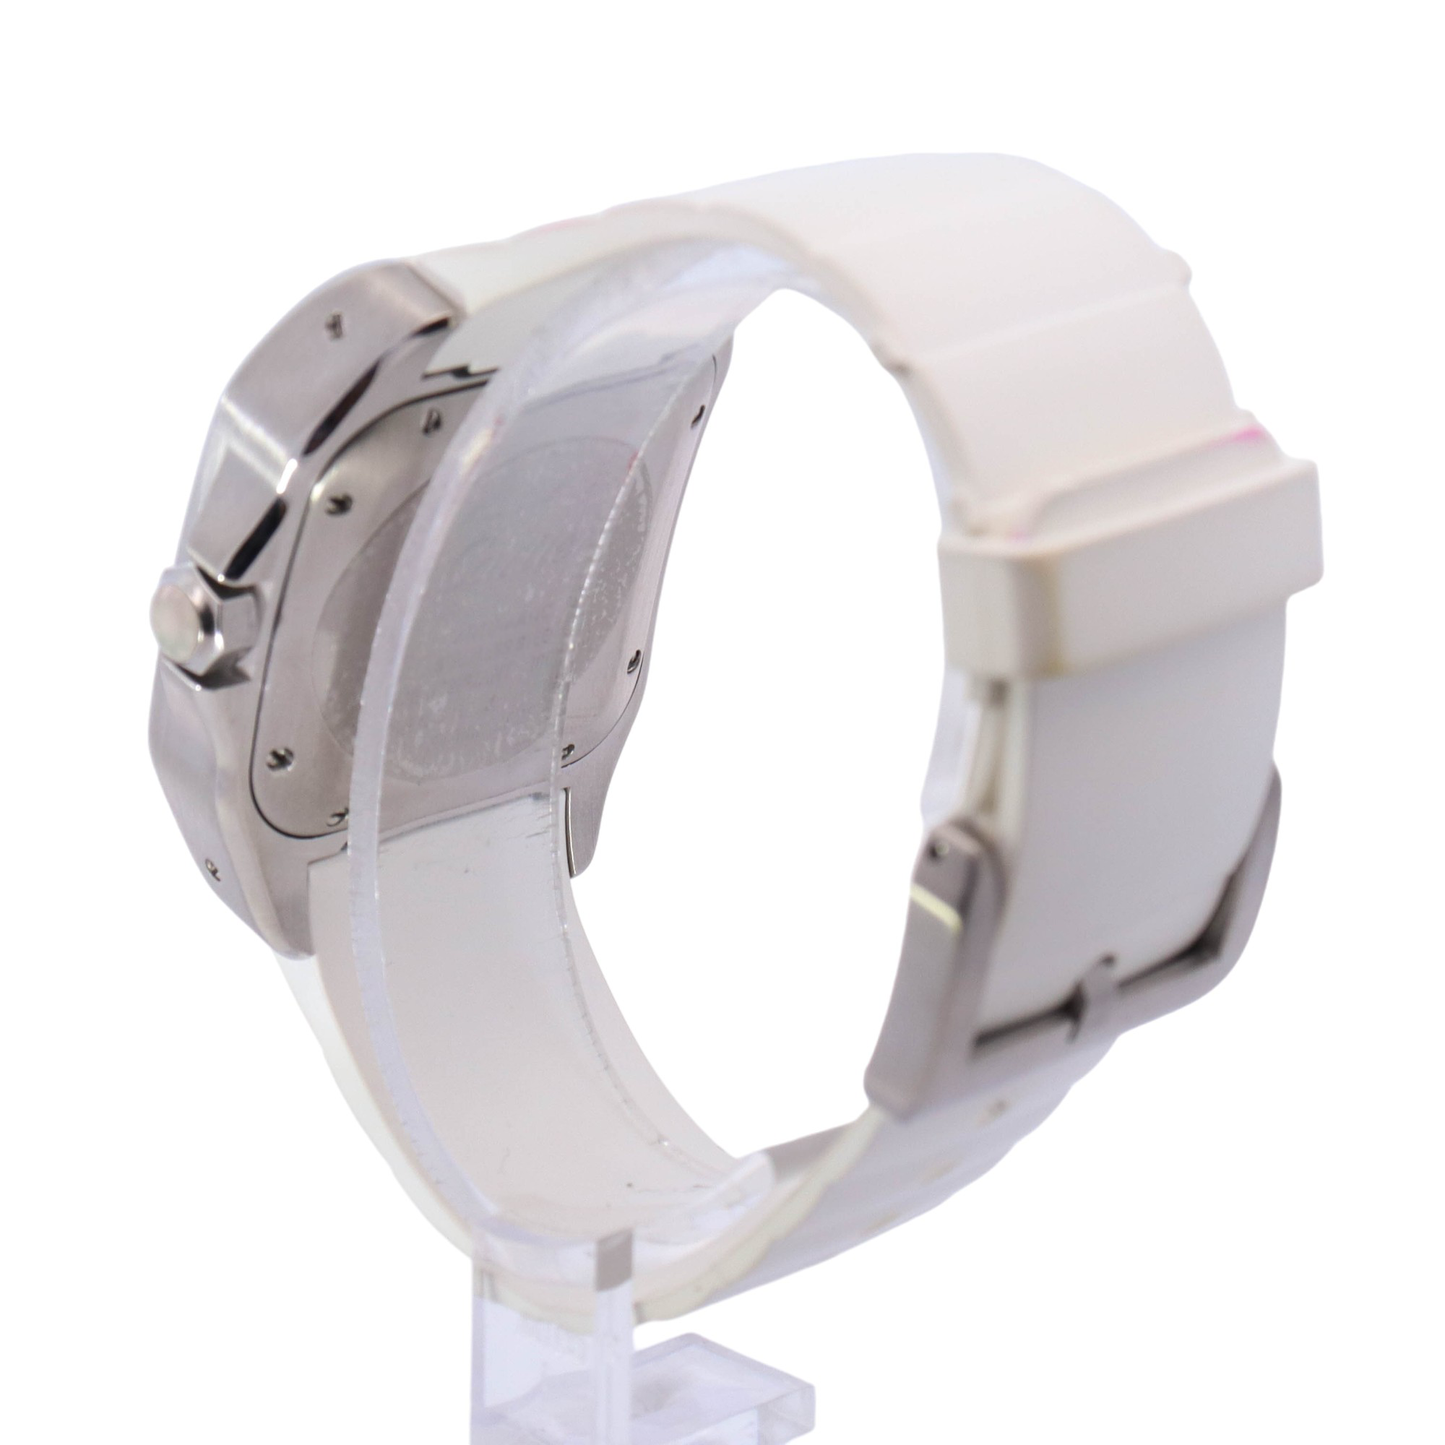 Cartier Santos 100 Stainless Steel 32mm White Roman Dial Watch Reference # W20122U2 - Happy Jewelers Fine Jewelry Lifetime Warranty